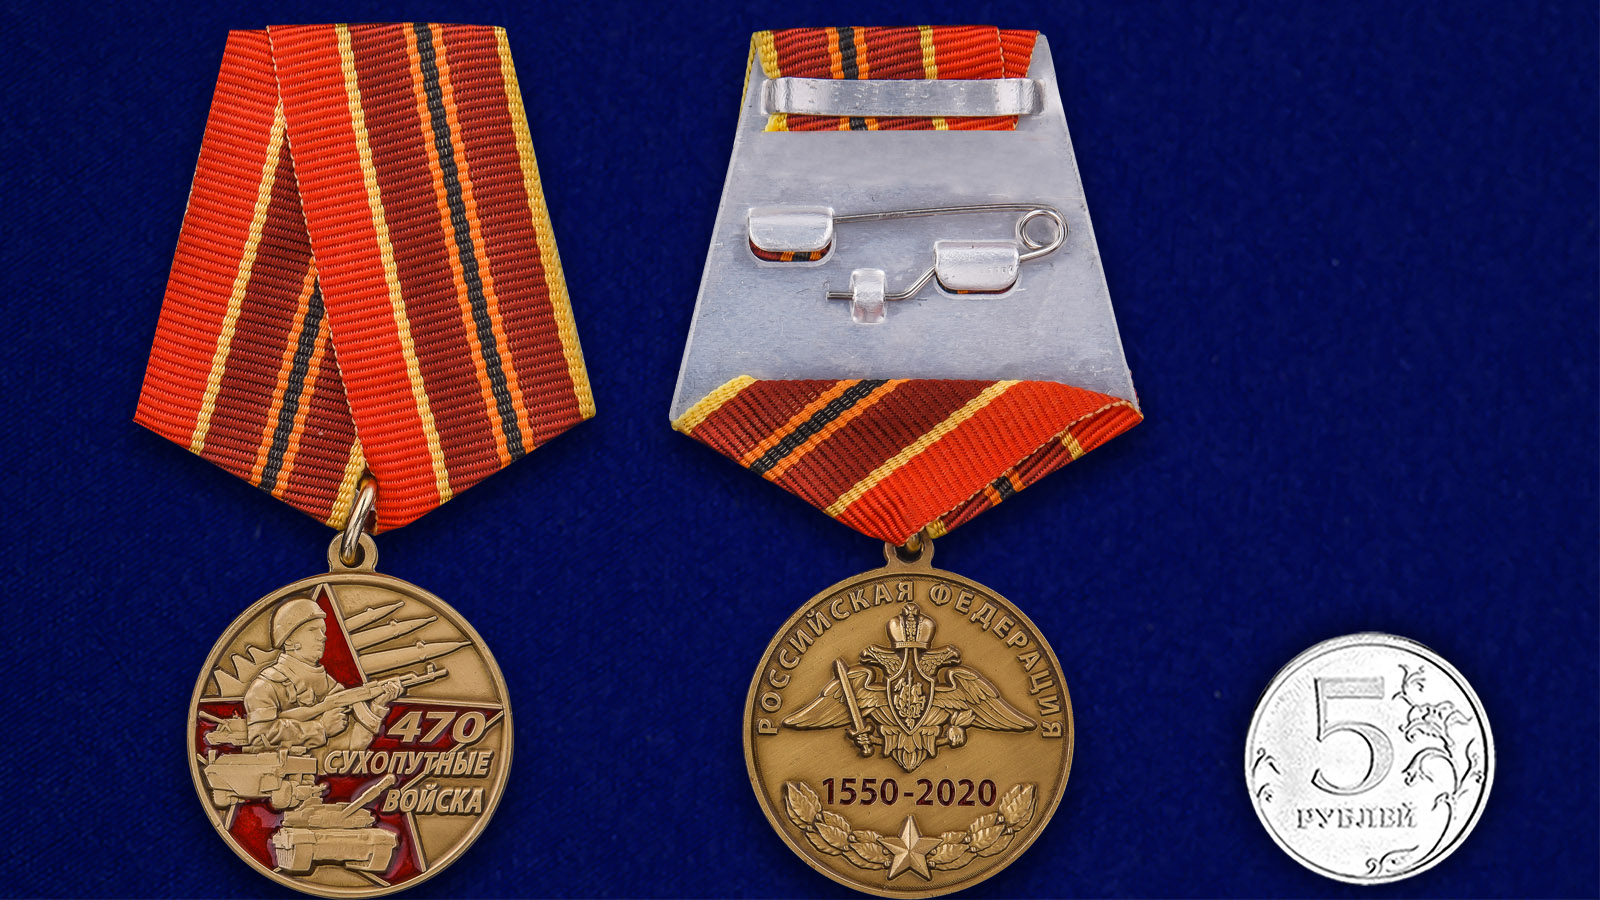 Нагрудная медаль "470 лет Сухопутным войскам" 